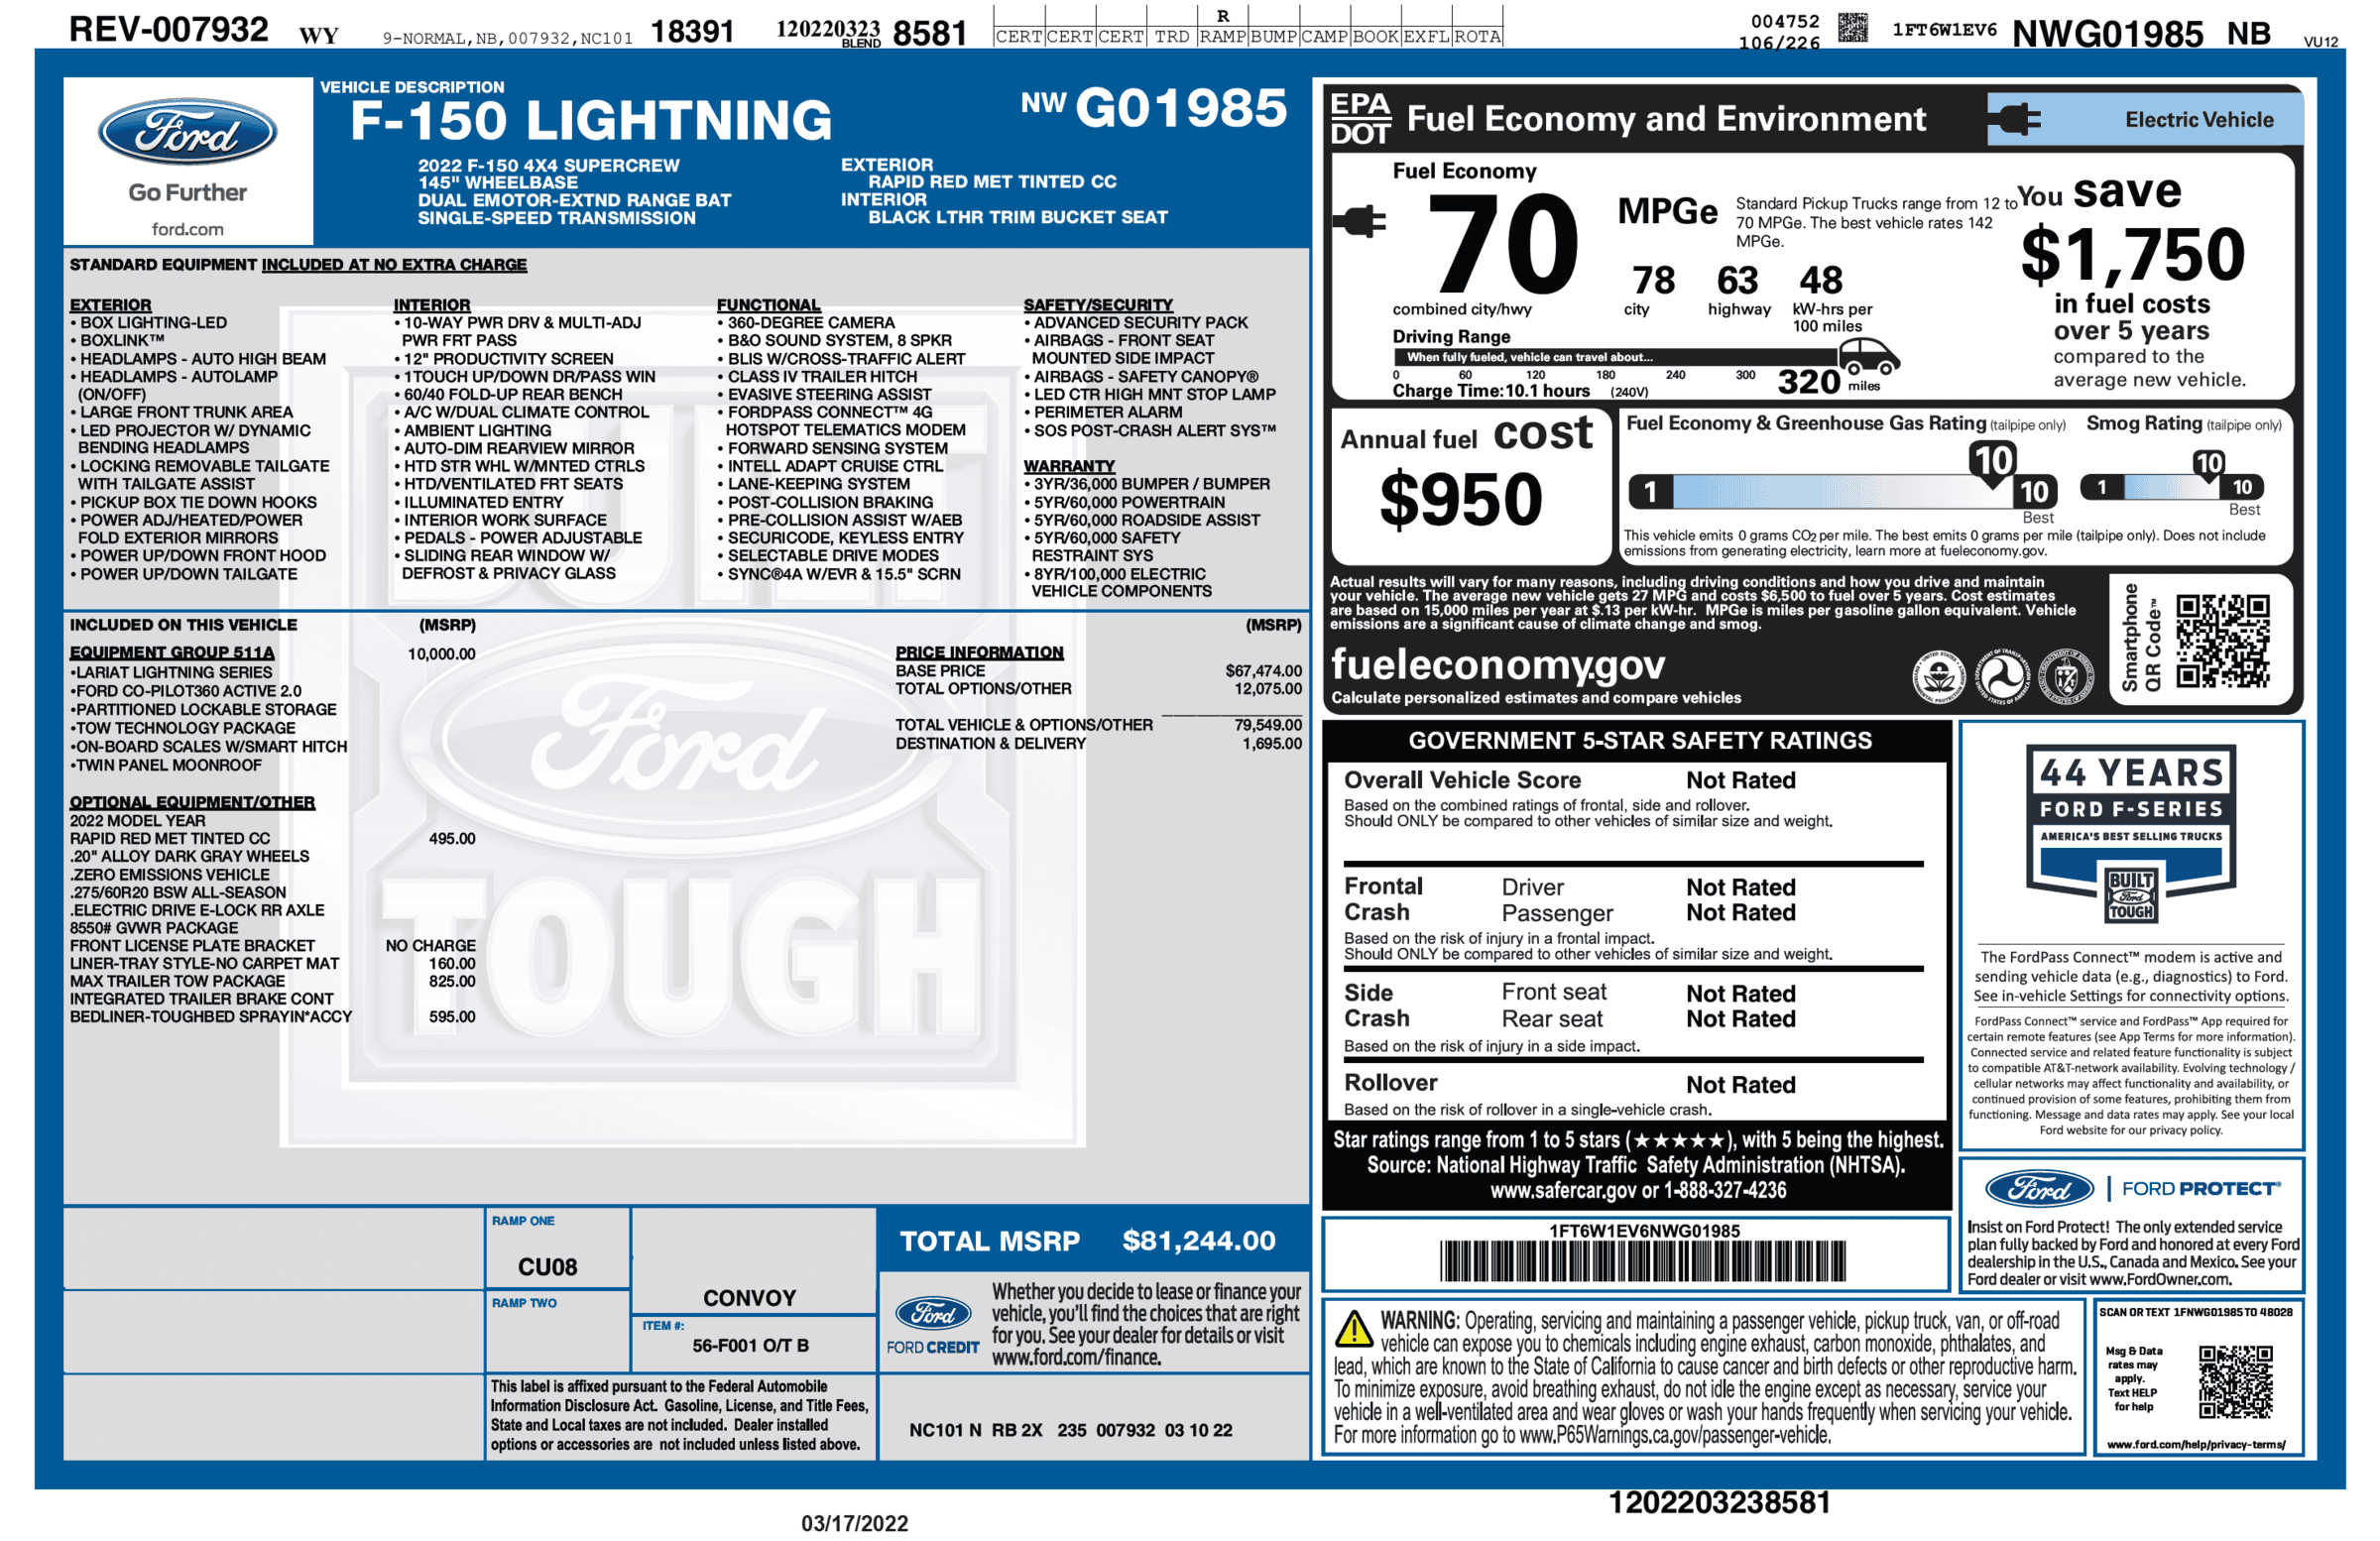 Ford F-150 Lightning F-150 Lightning Official EPA Range MPGe Revealed in Window Sticker (Base + Extended Range)! 1647536414291-